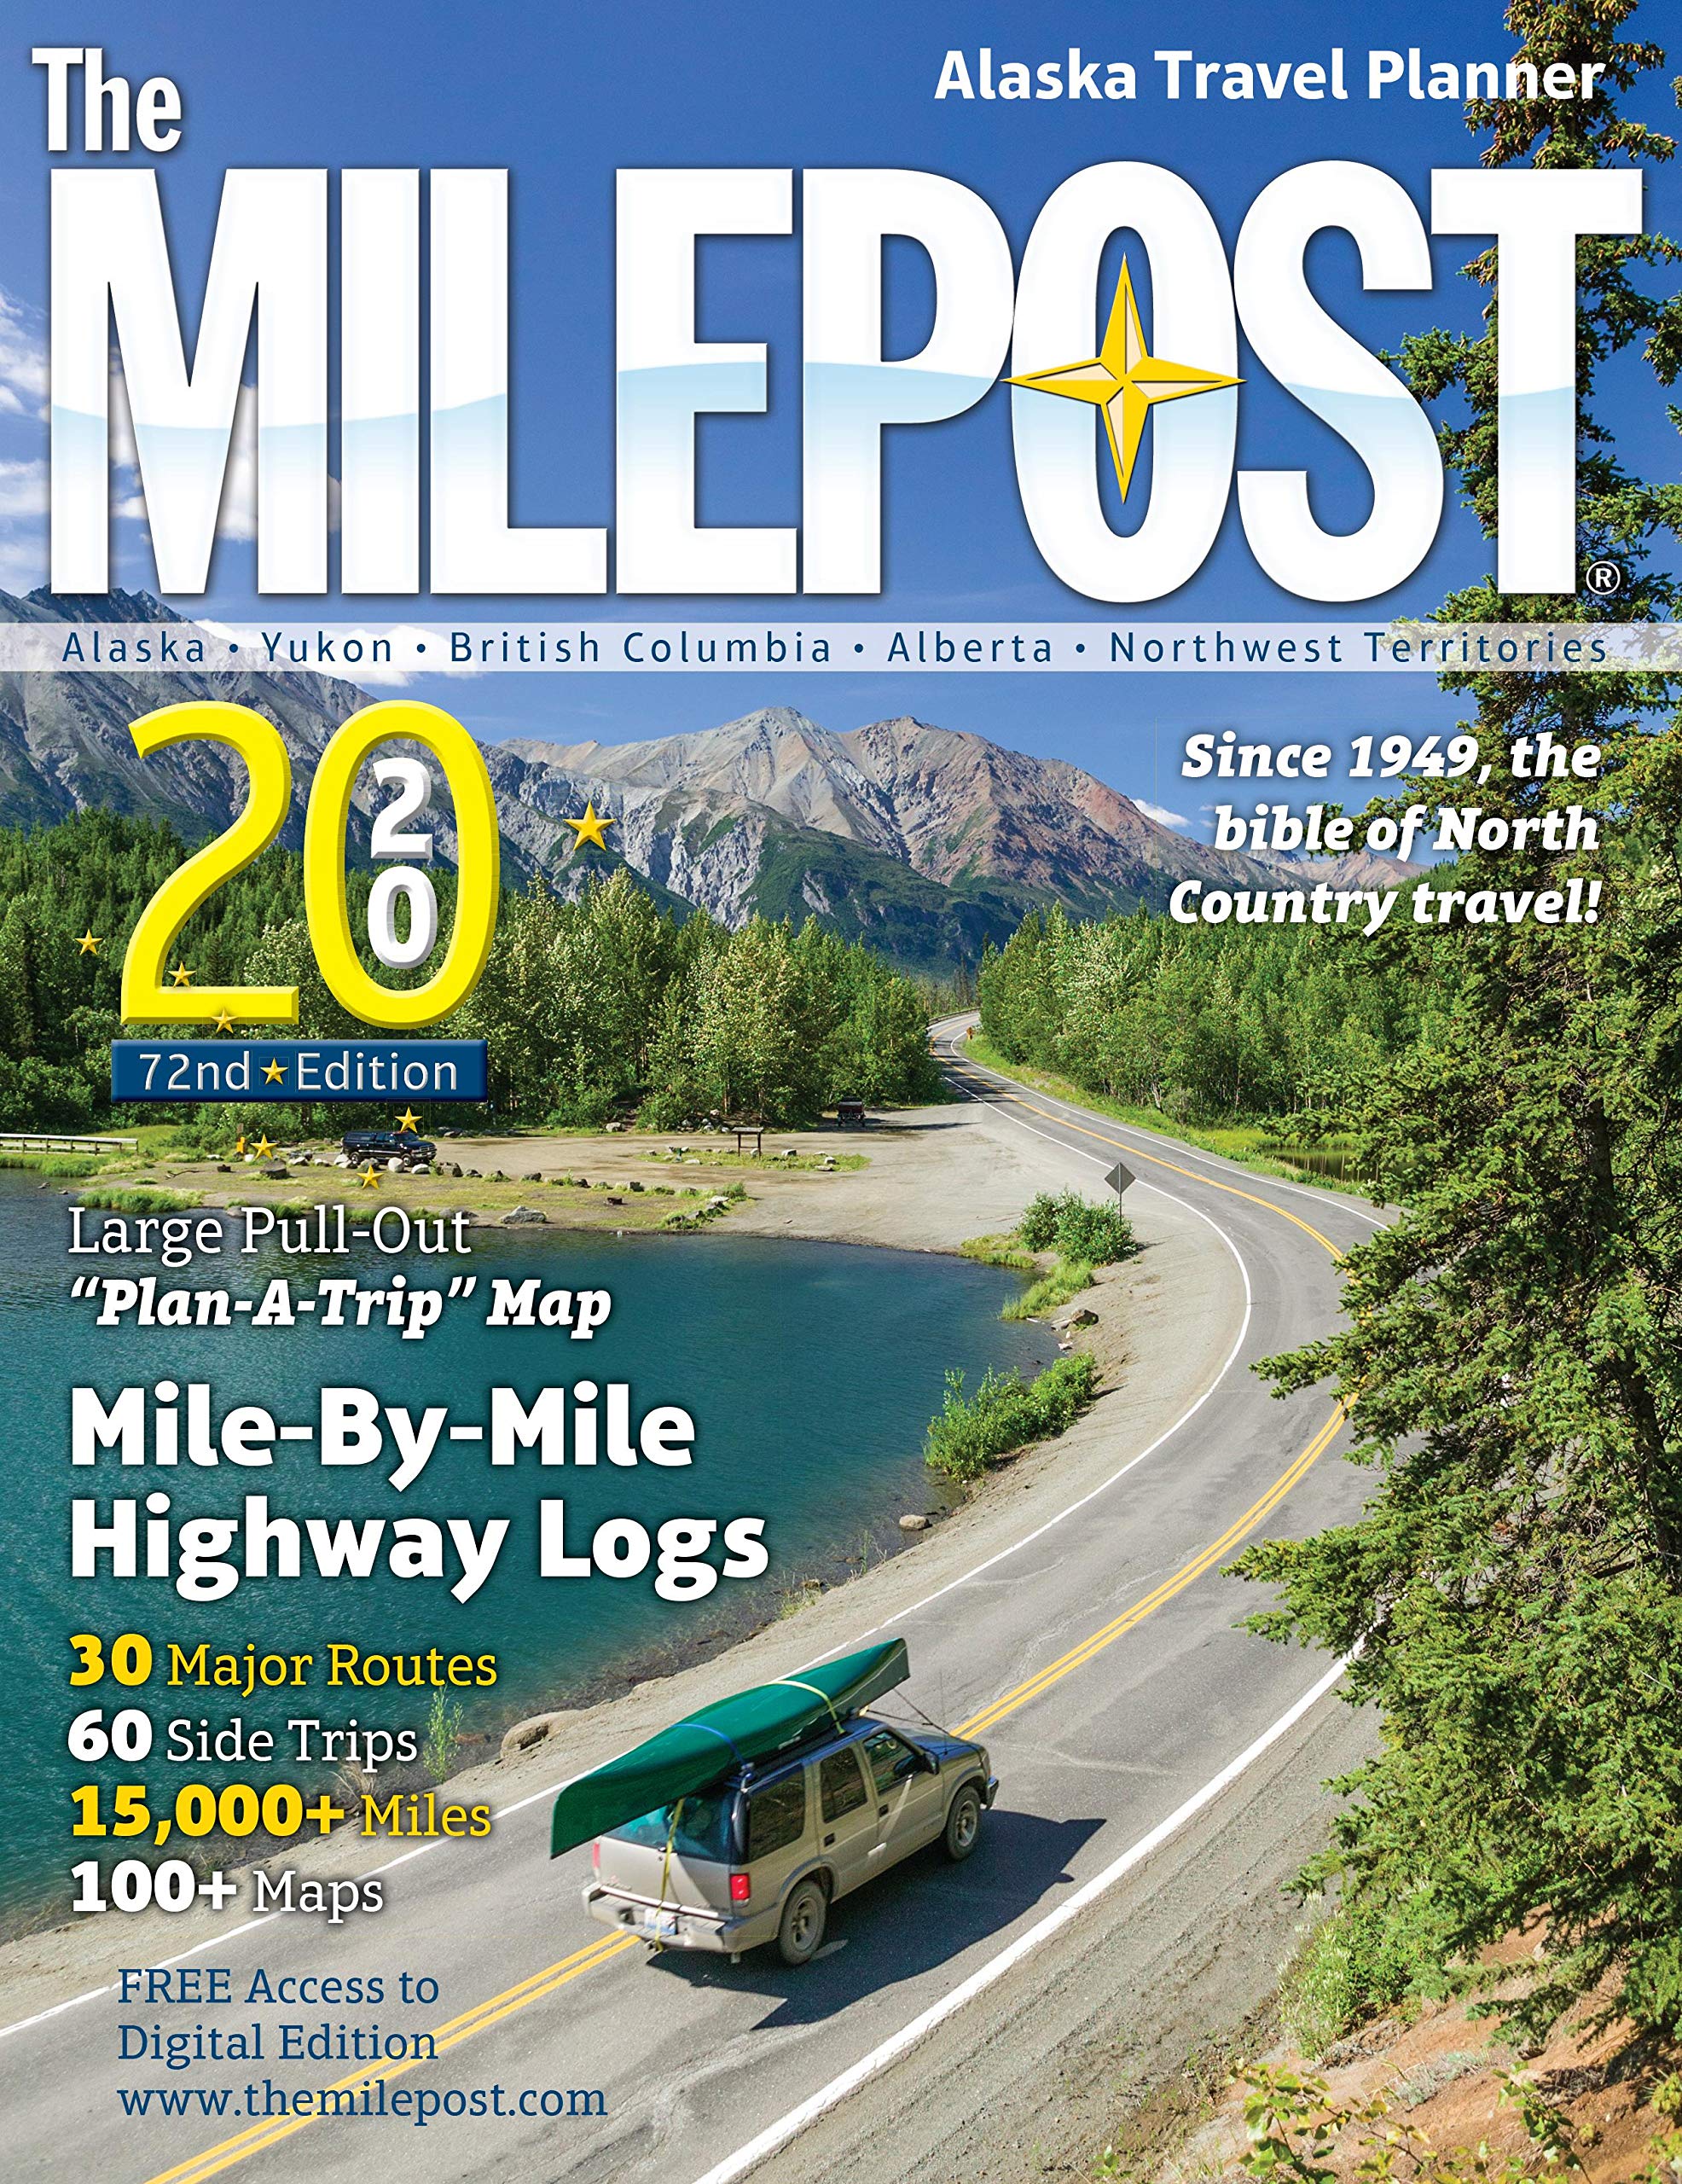 The MILEPOST 2020: Alaska Travel Planner